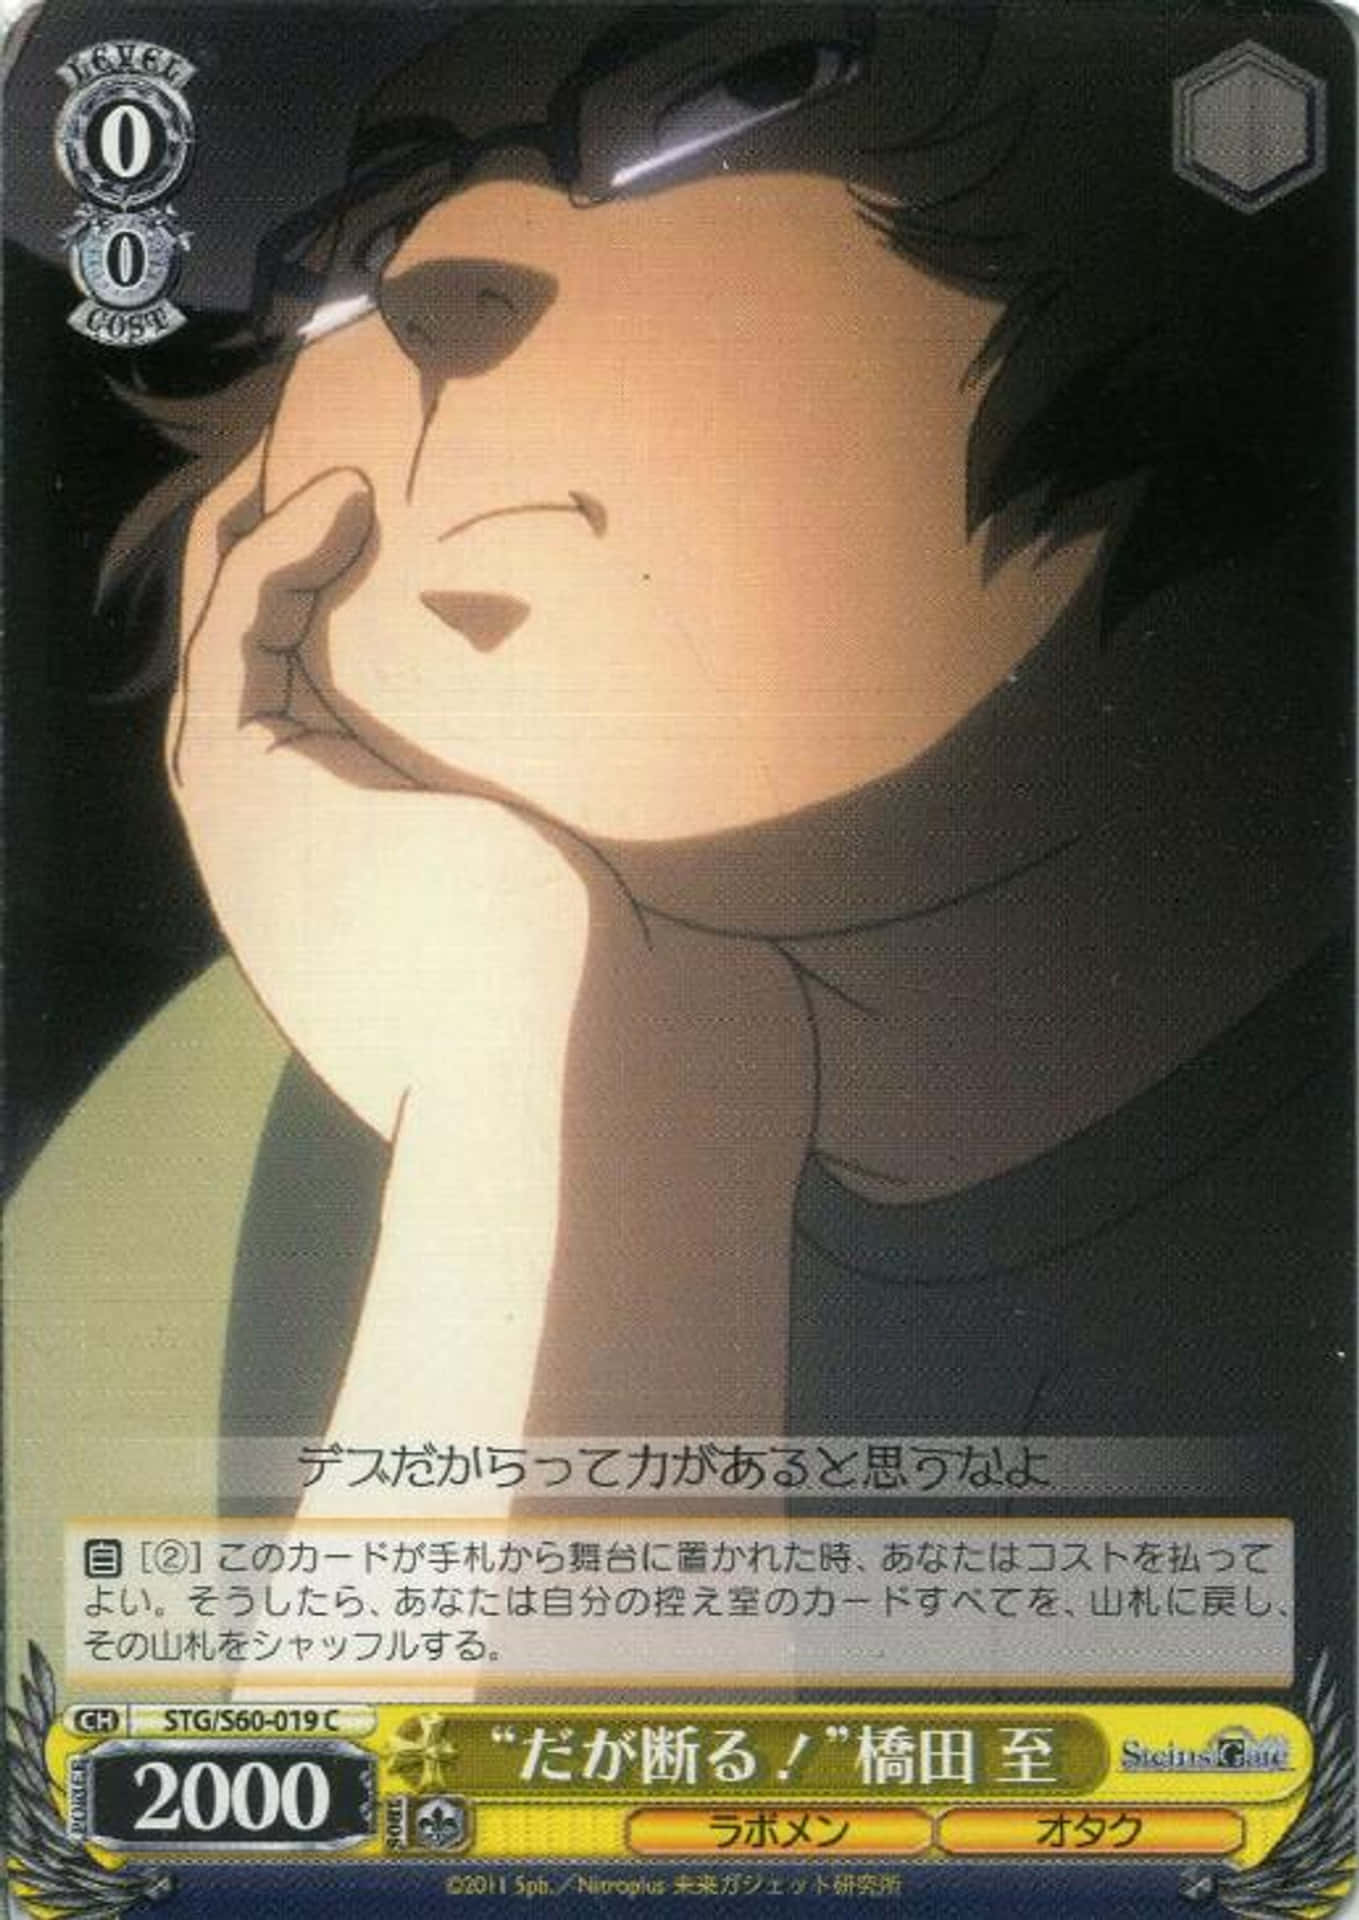 Itaru Hashida from Steins;Gate animated series Wallpaper